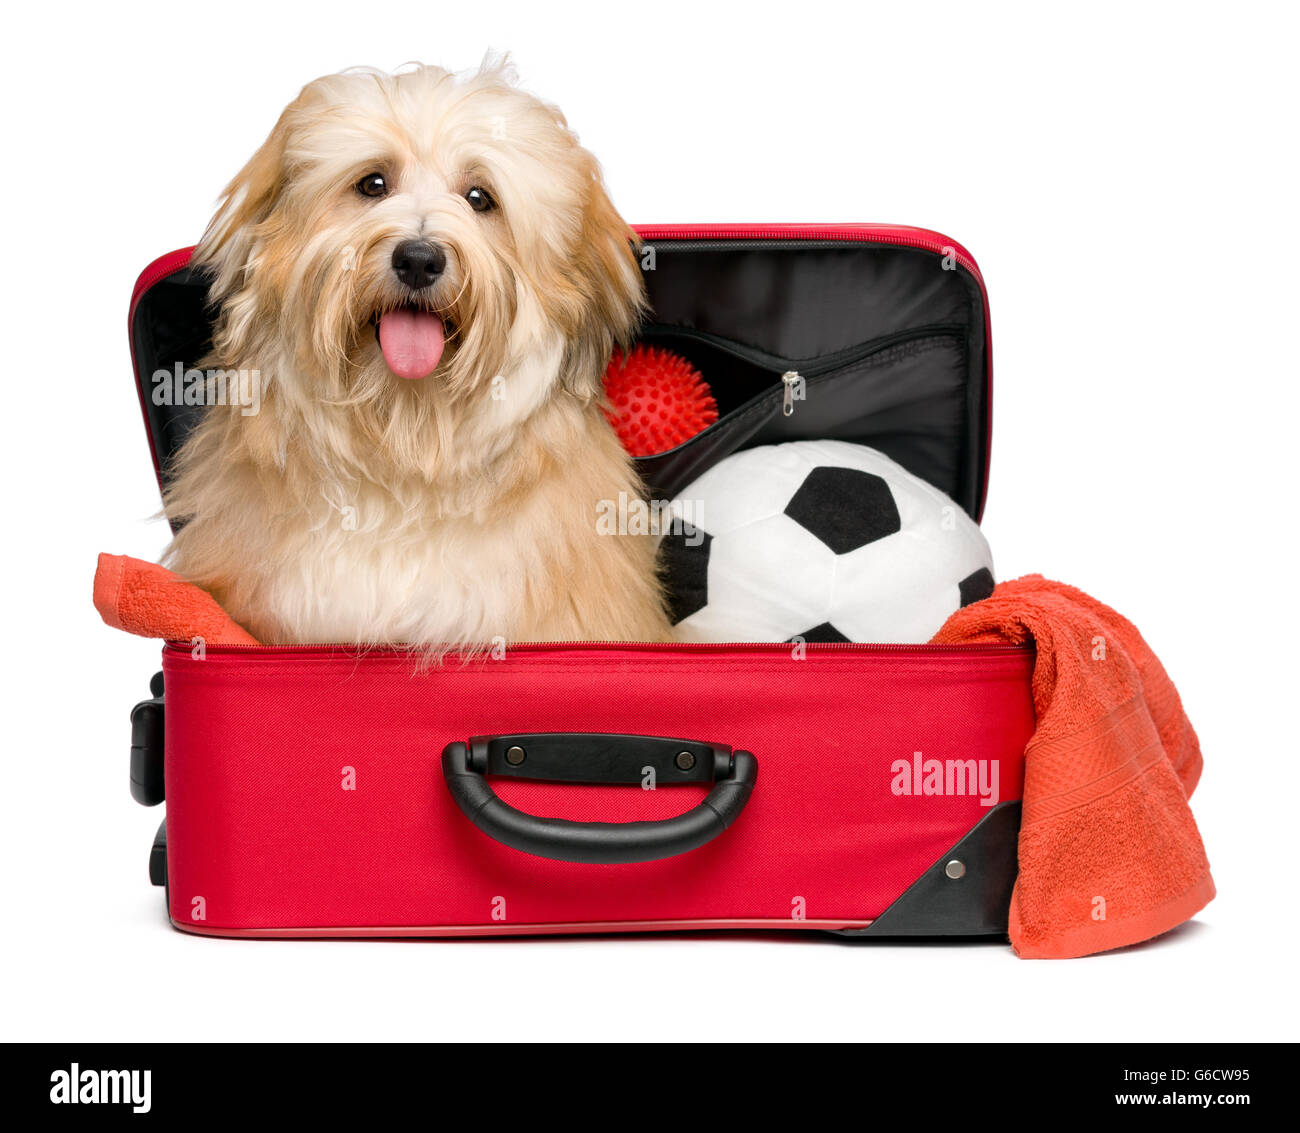 Bichon Havanais rouge heureux chien est assis dans une valise de voyage rouge avec son ballon de soccer et de jouets et d'attente pour le départ Banque D'Images